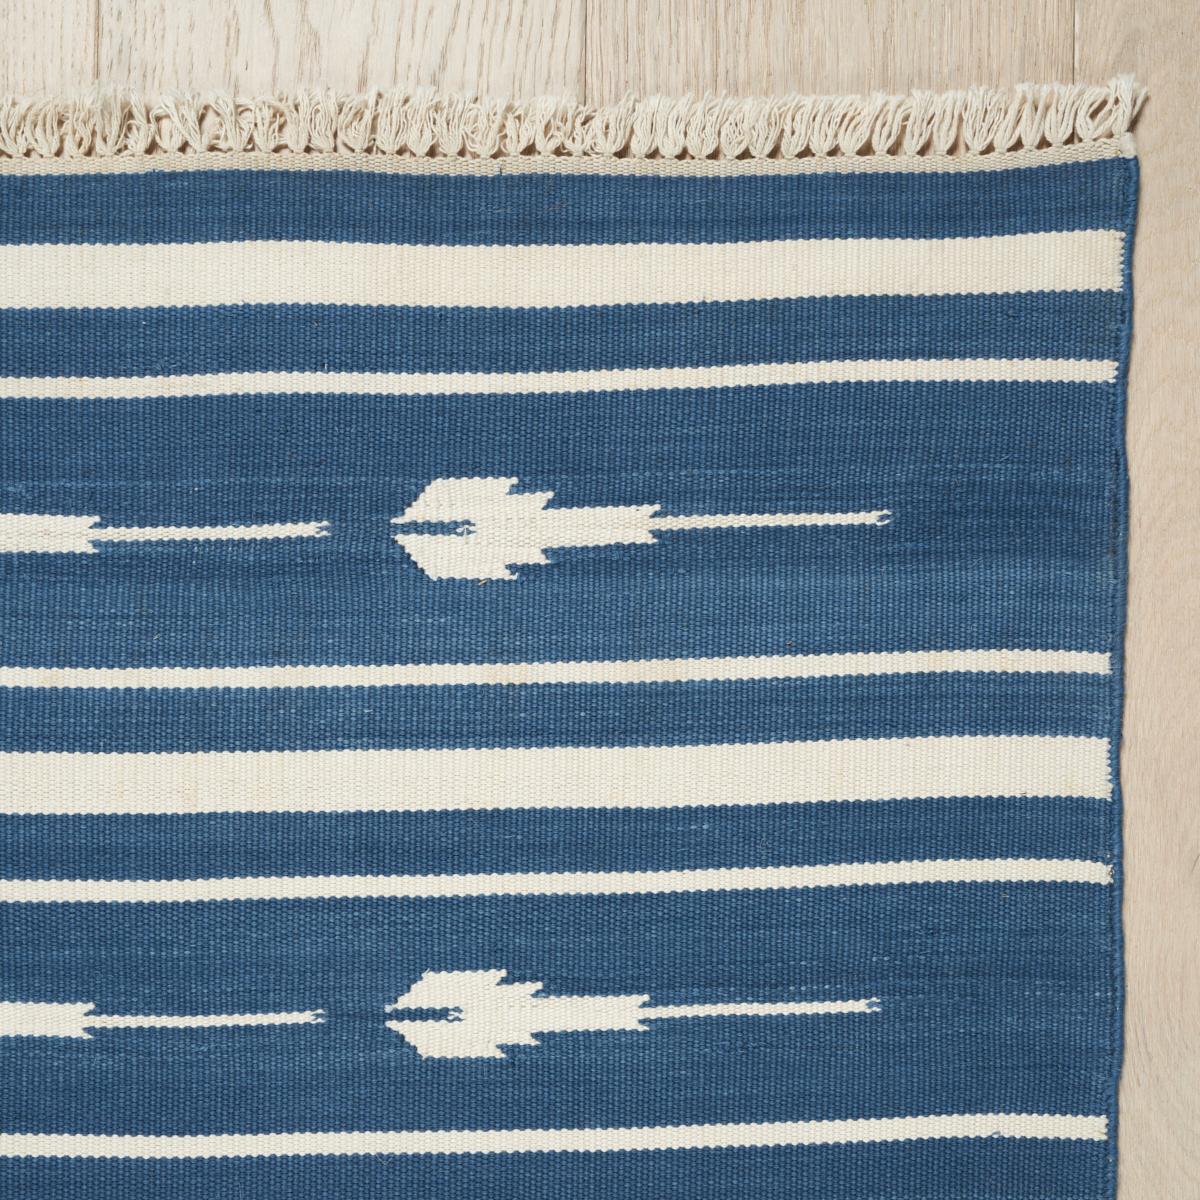 Un tissage plat en coton avec un motif polyvalent et de belles variations tonales, Amagansett est disponible dans une gamme de tailles utiles. Il s'agit d'un tapis élégant et facile à utiliser qui trouve sa place dans presque toutes les pièces.
